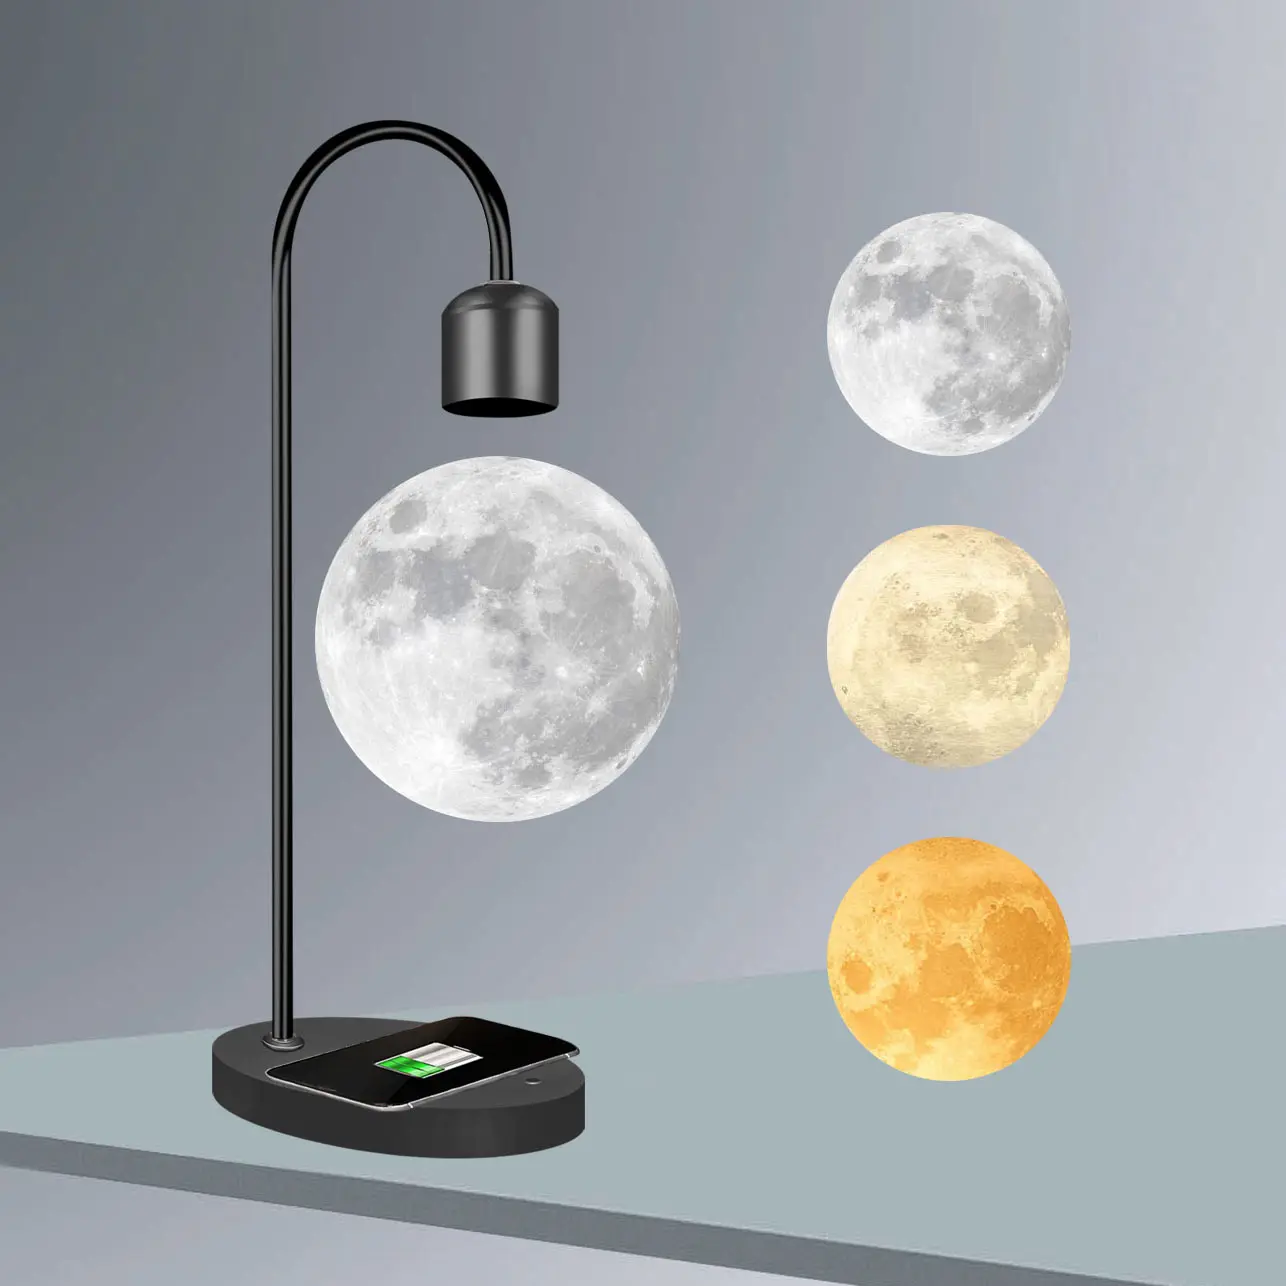 Farbschaltbare magnetische Levitation LED-Licht 3D schwimmender levitativer Tisch schwimmende Mondlampe mit kabellosem Handyladegerät